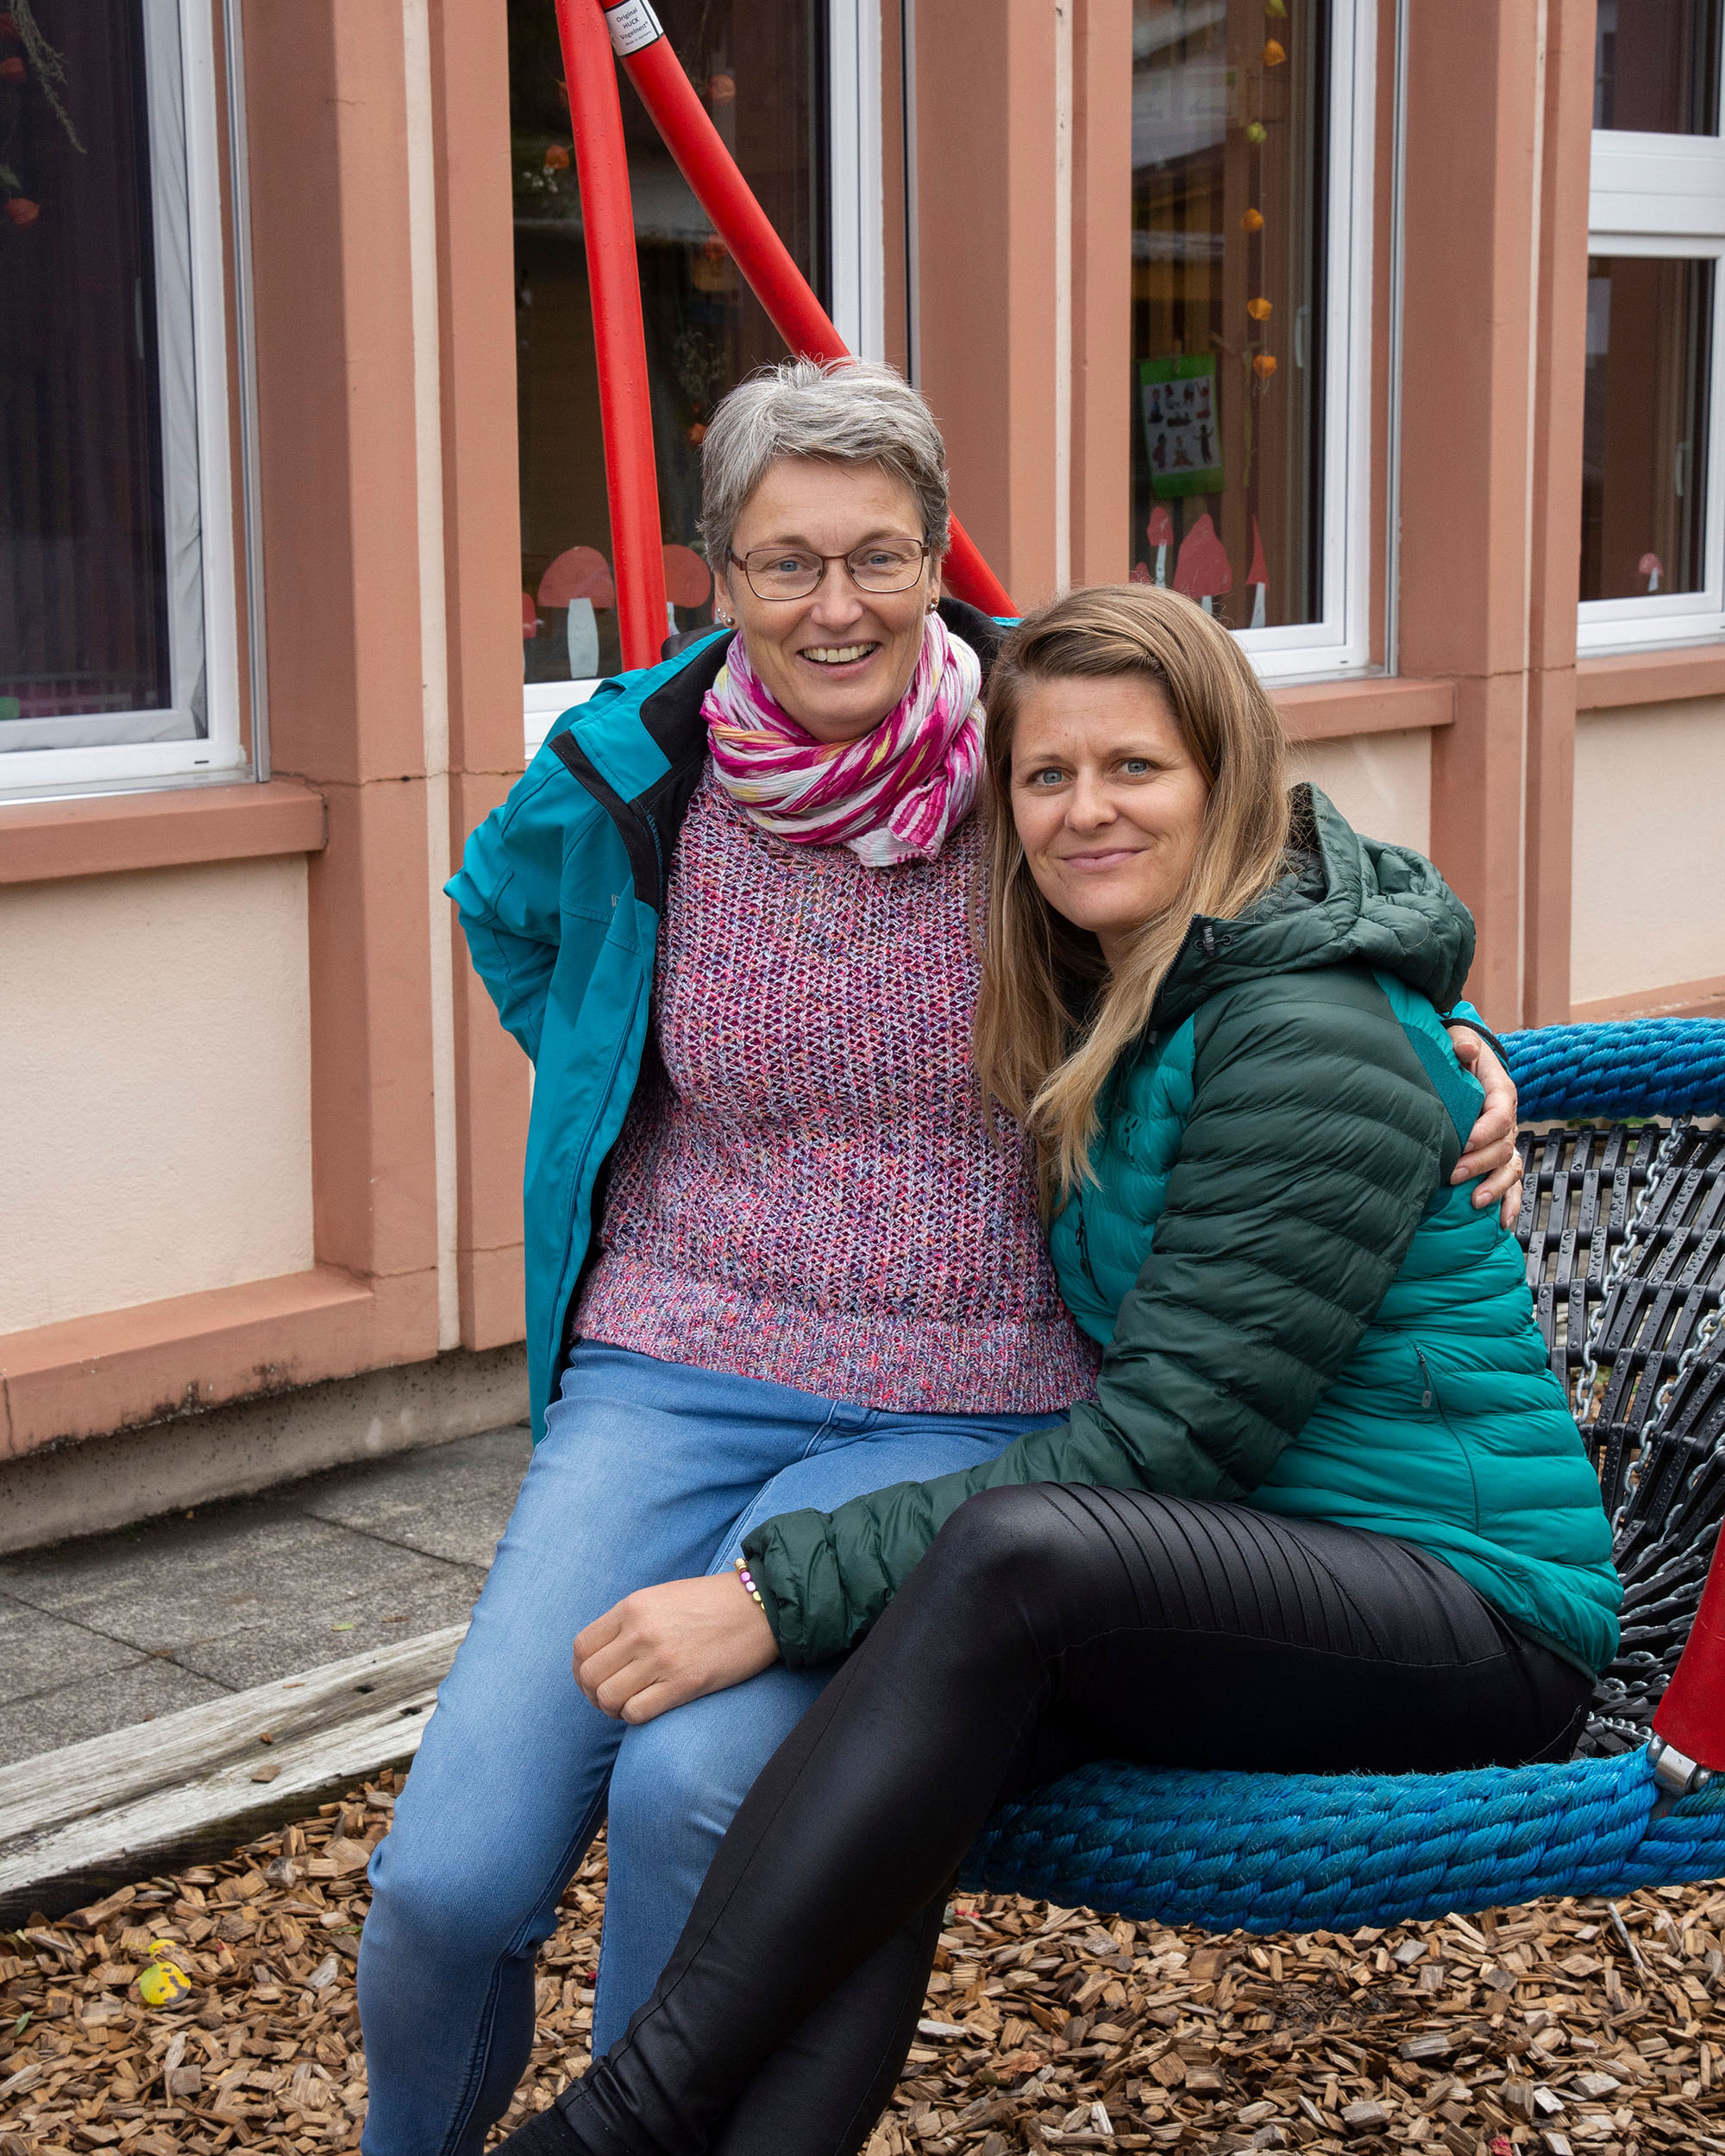  Ursula Wandfluh und Martina Klossner haben in Frutigen die Kita Kinderzimmer gegründet.